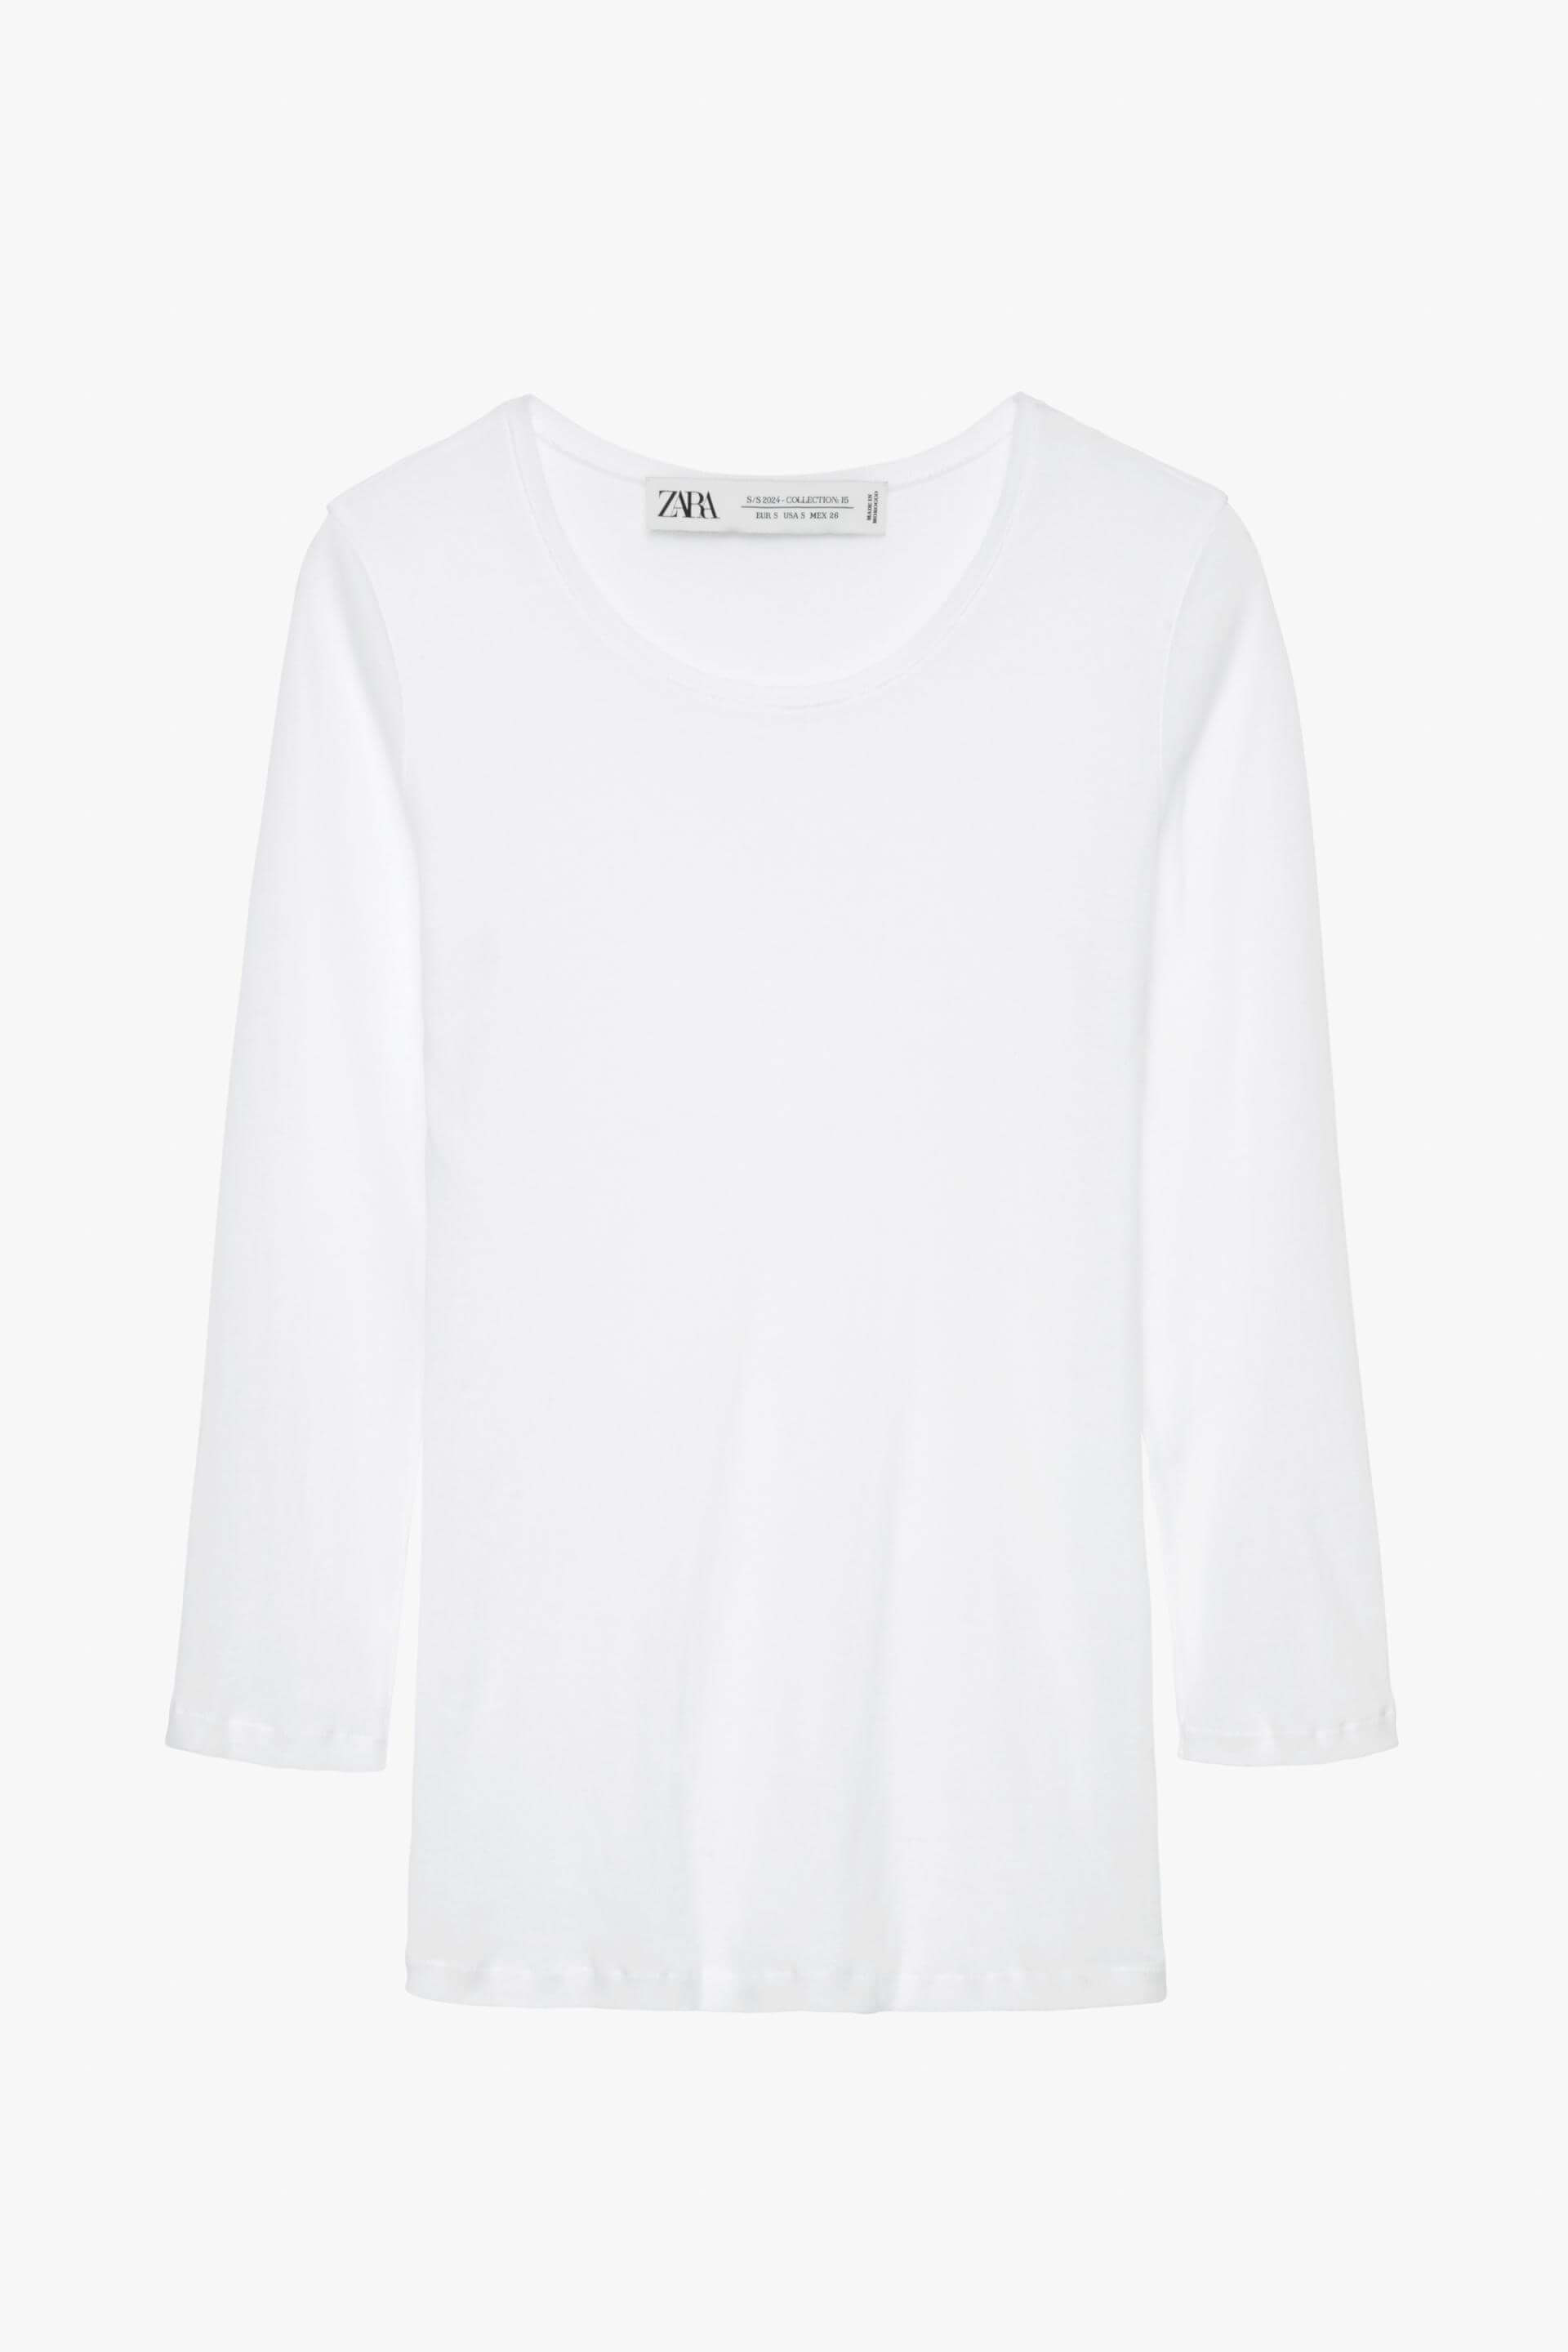 Рубашка Zara Supima Cotton - Limited Edition, белый топ zara supima cotton черный